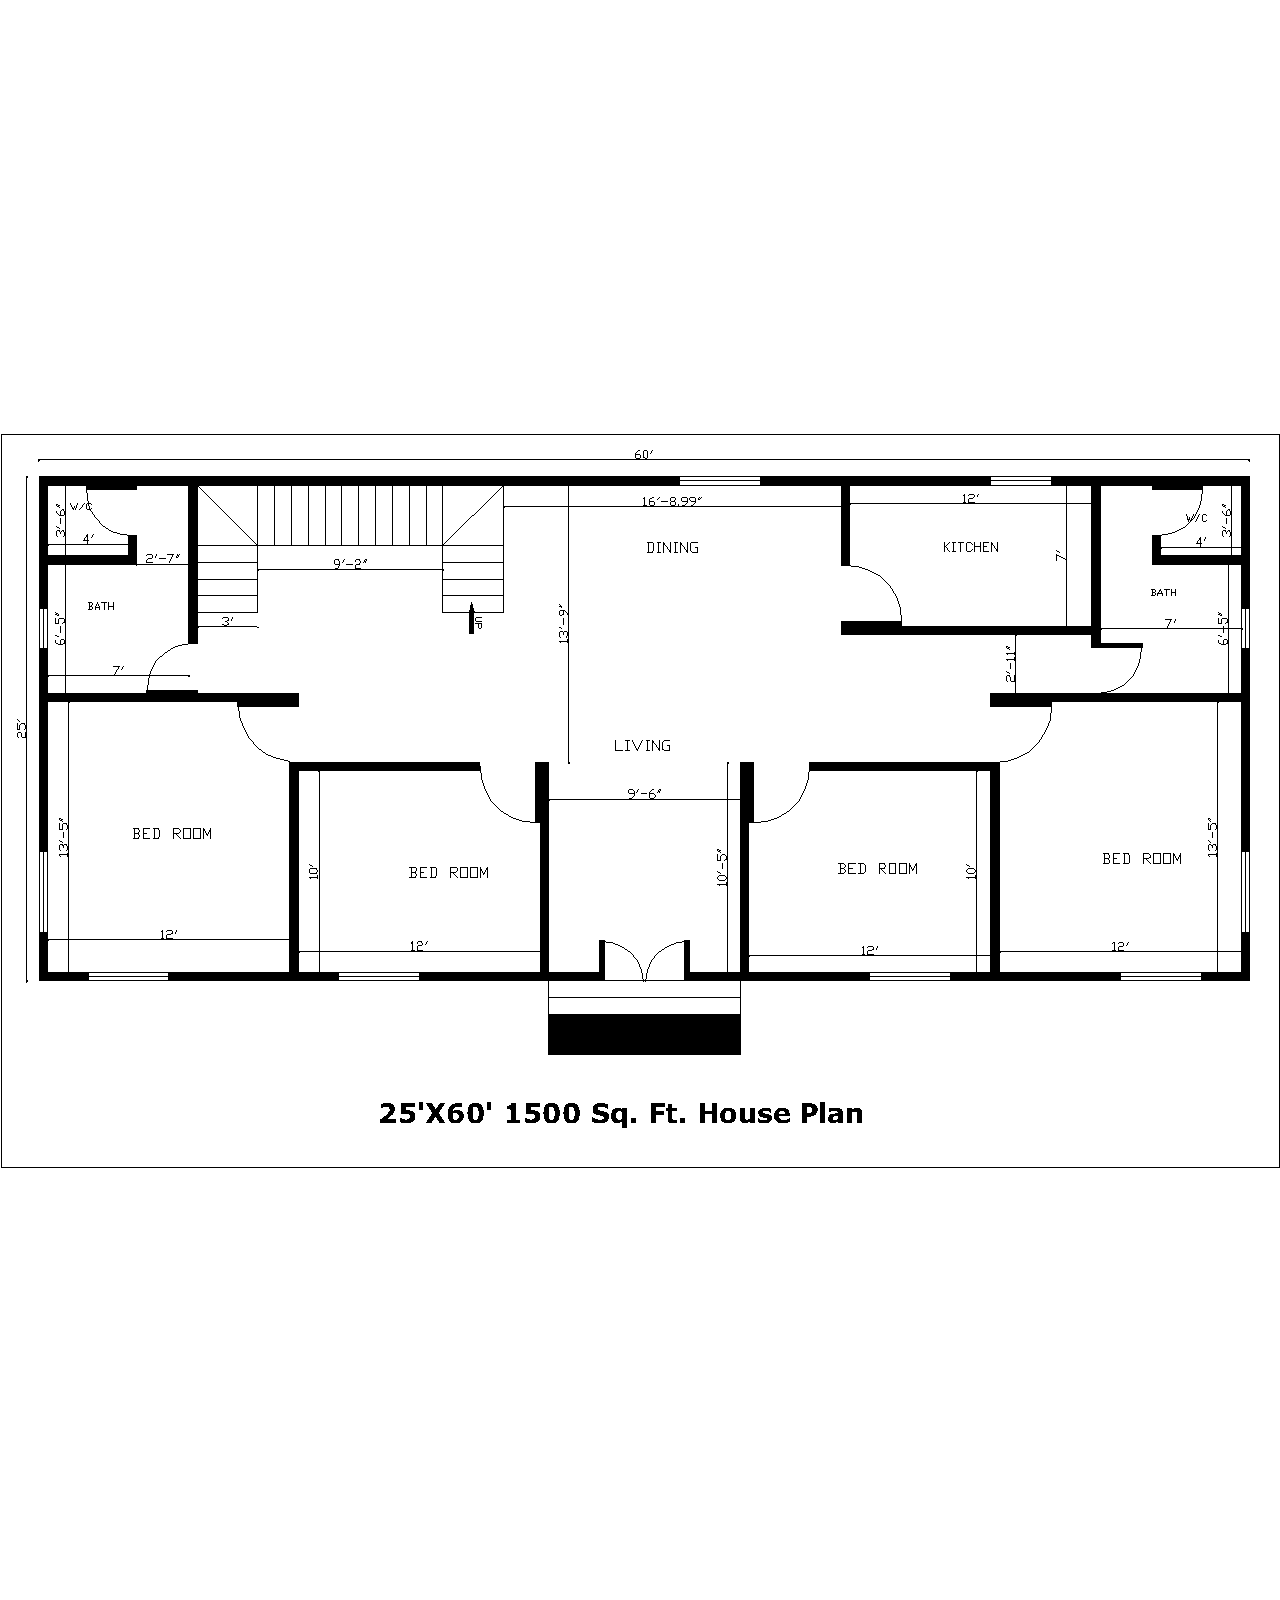 25'X60' 1500 Sq. Ft. House Plan | 25'X60' 1500 Sq. Ft. Gharka Naksha